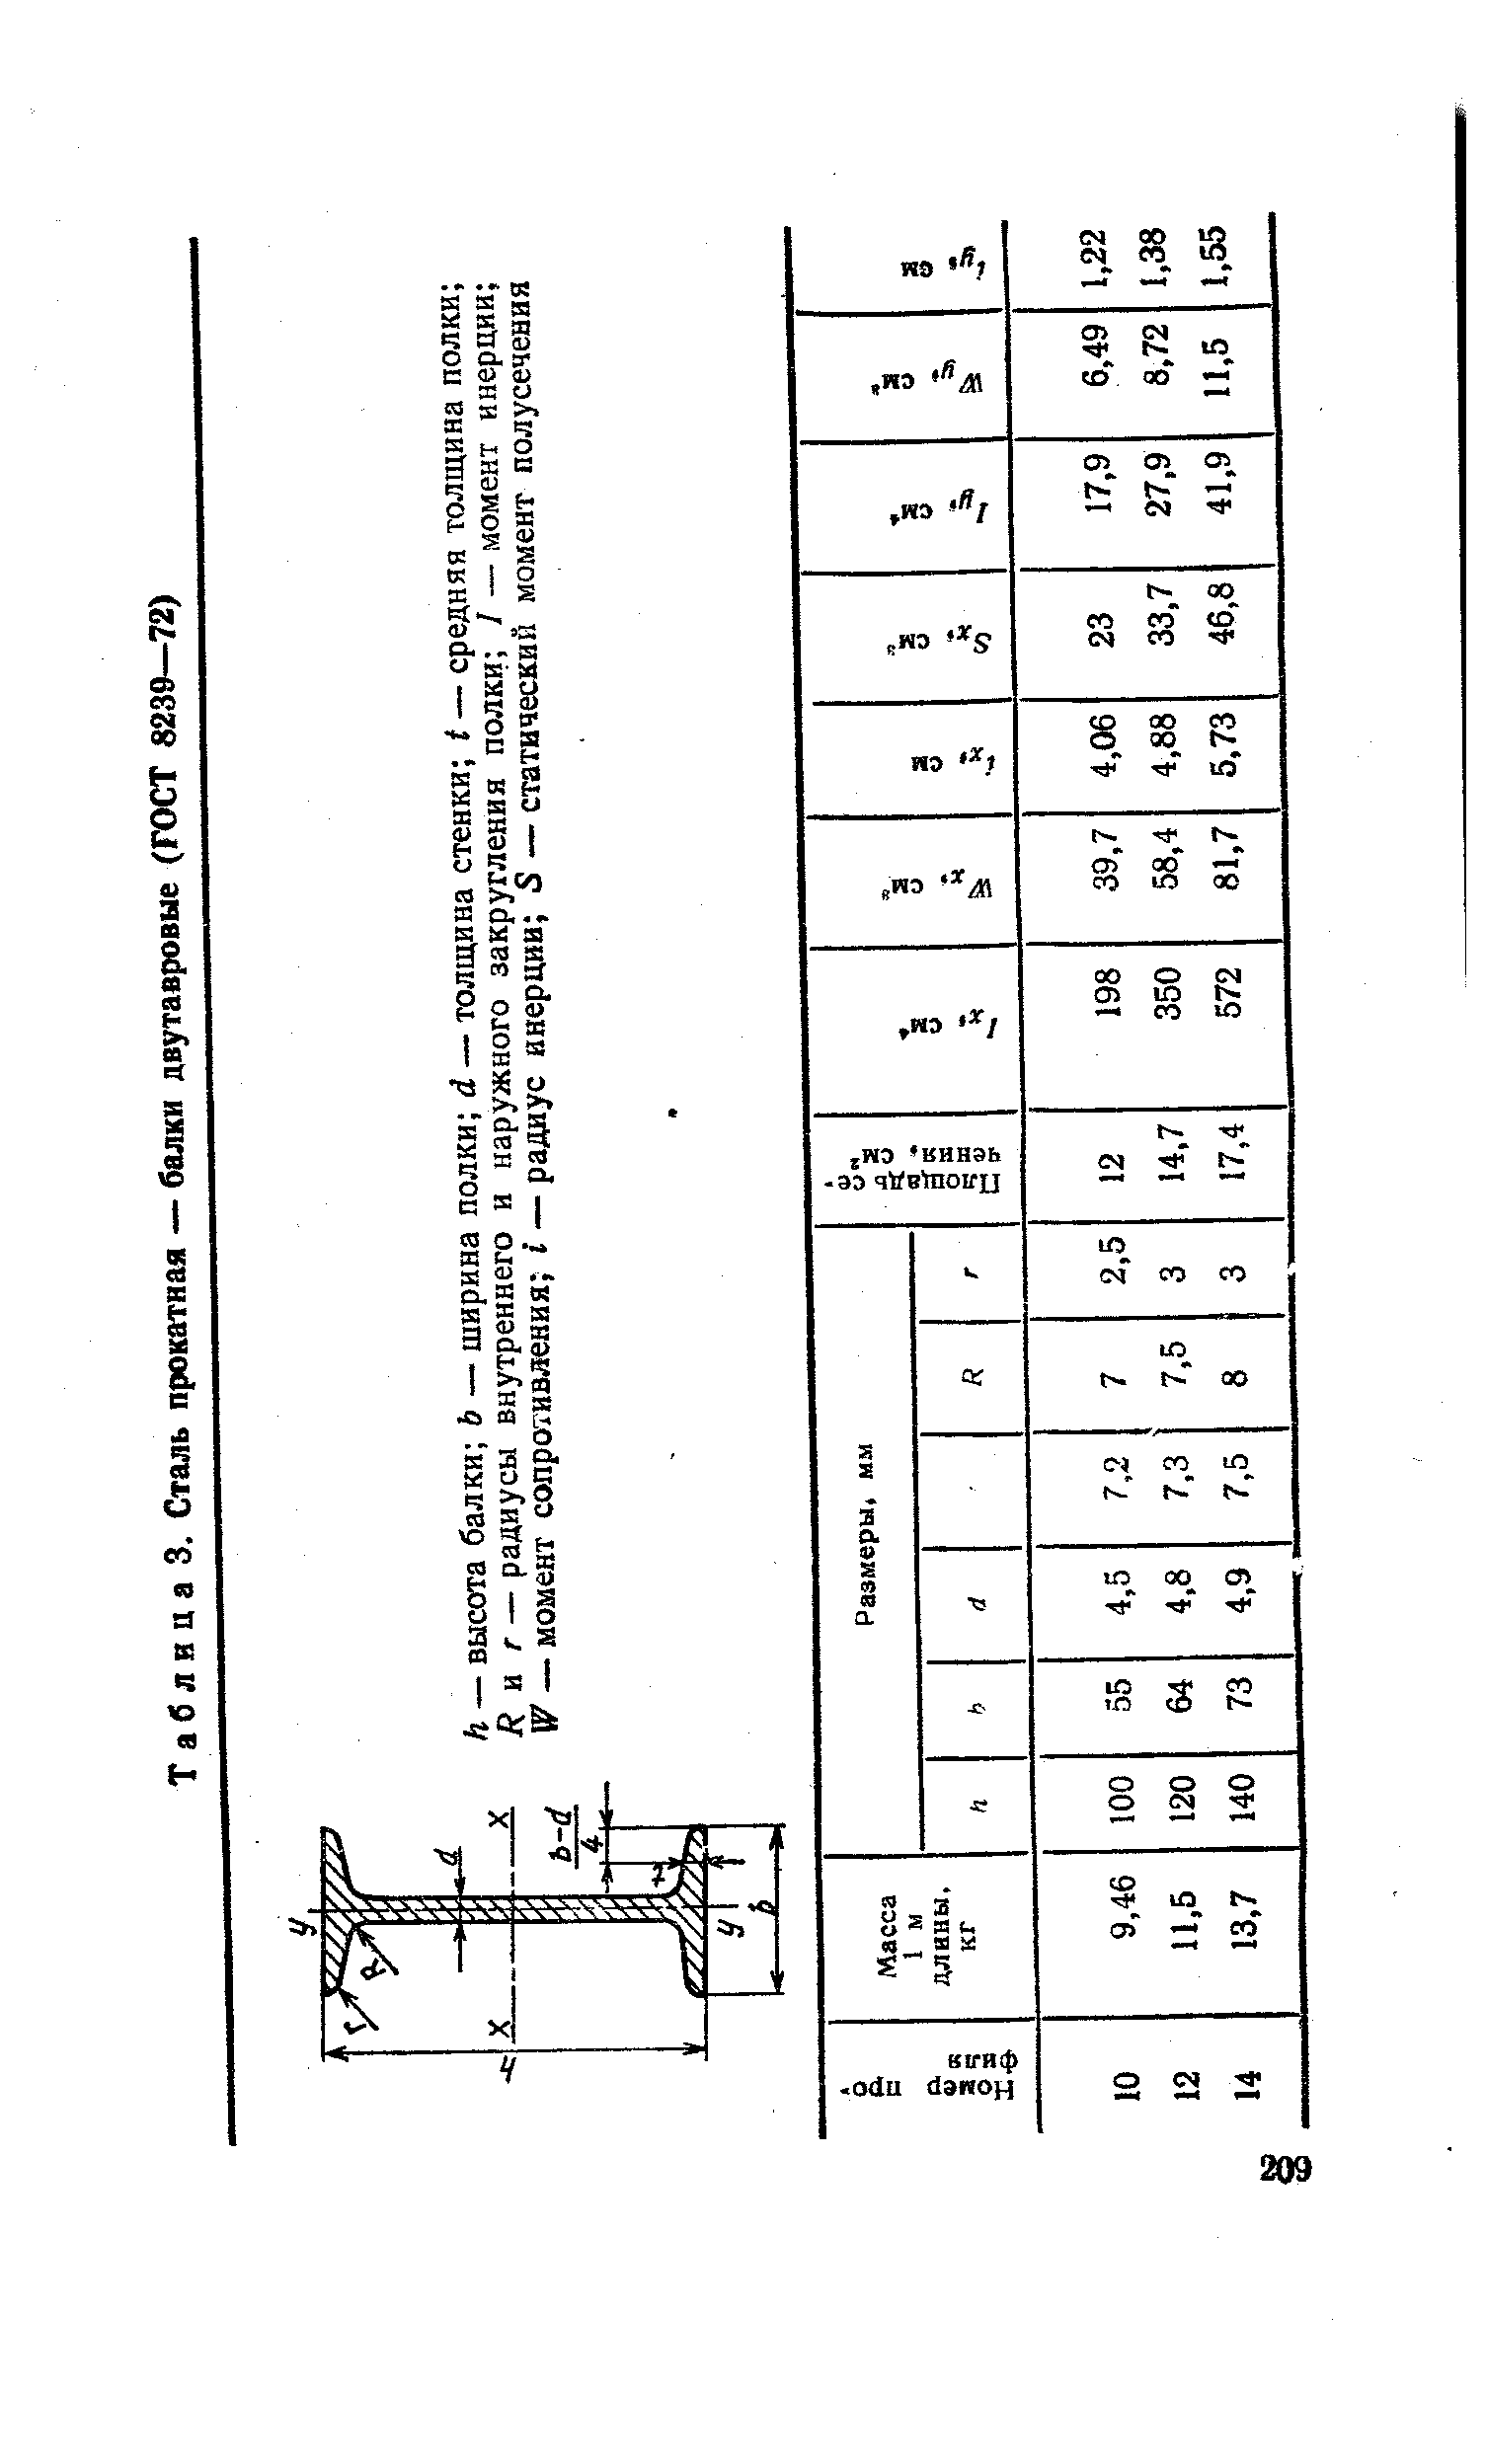 Таблица 3. Сталь прокатная — балки двутавровые (ГОСТ 8239—72)
